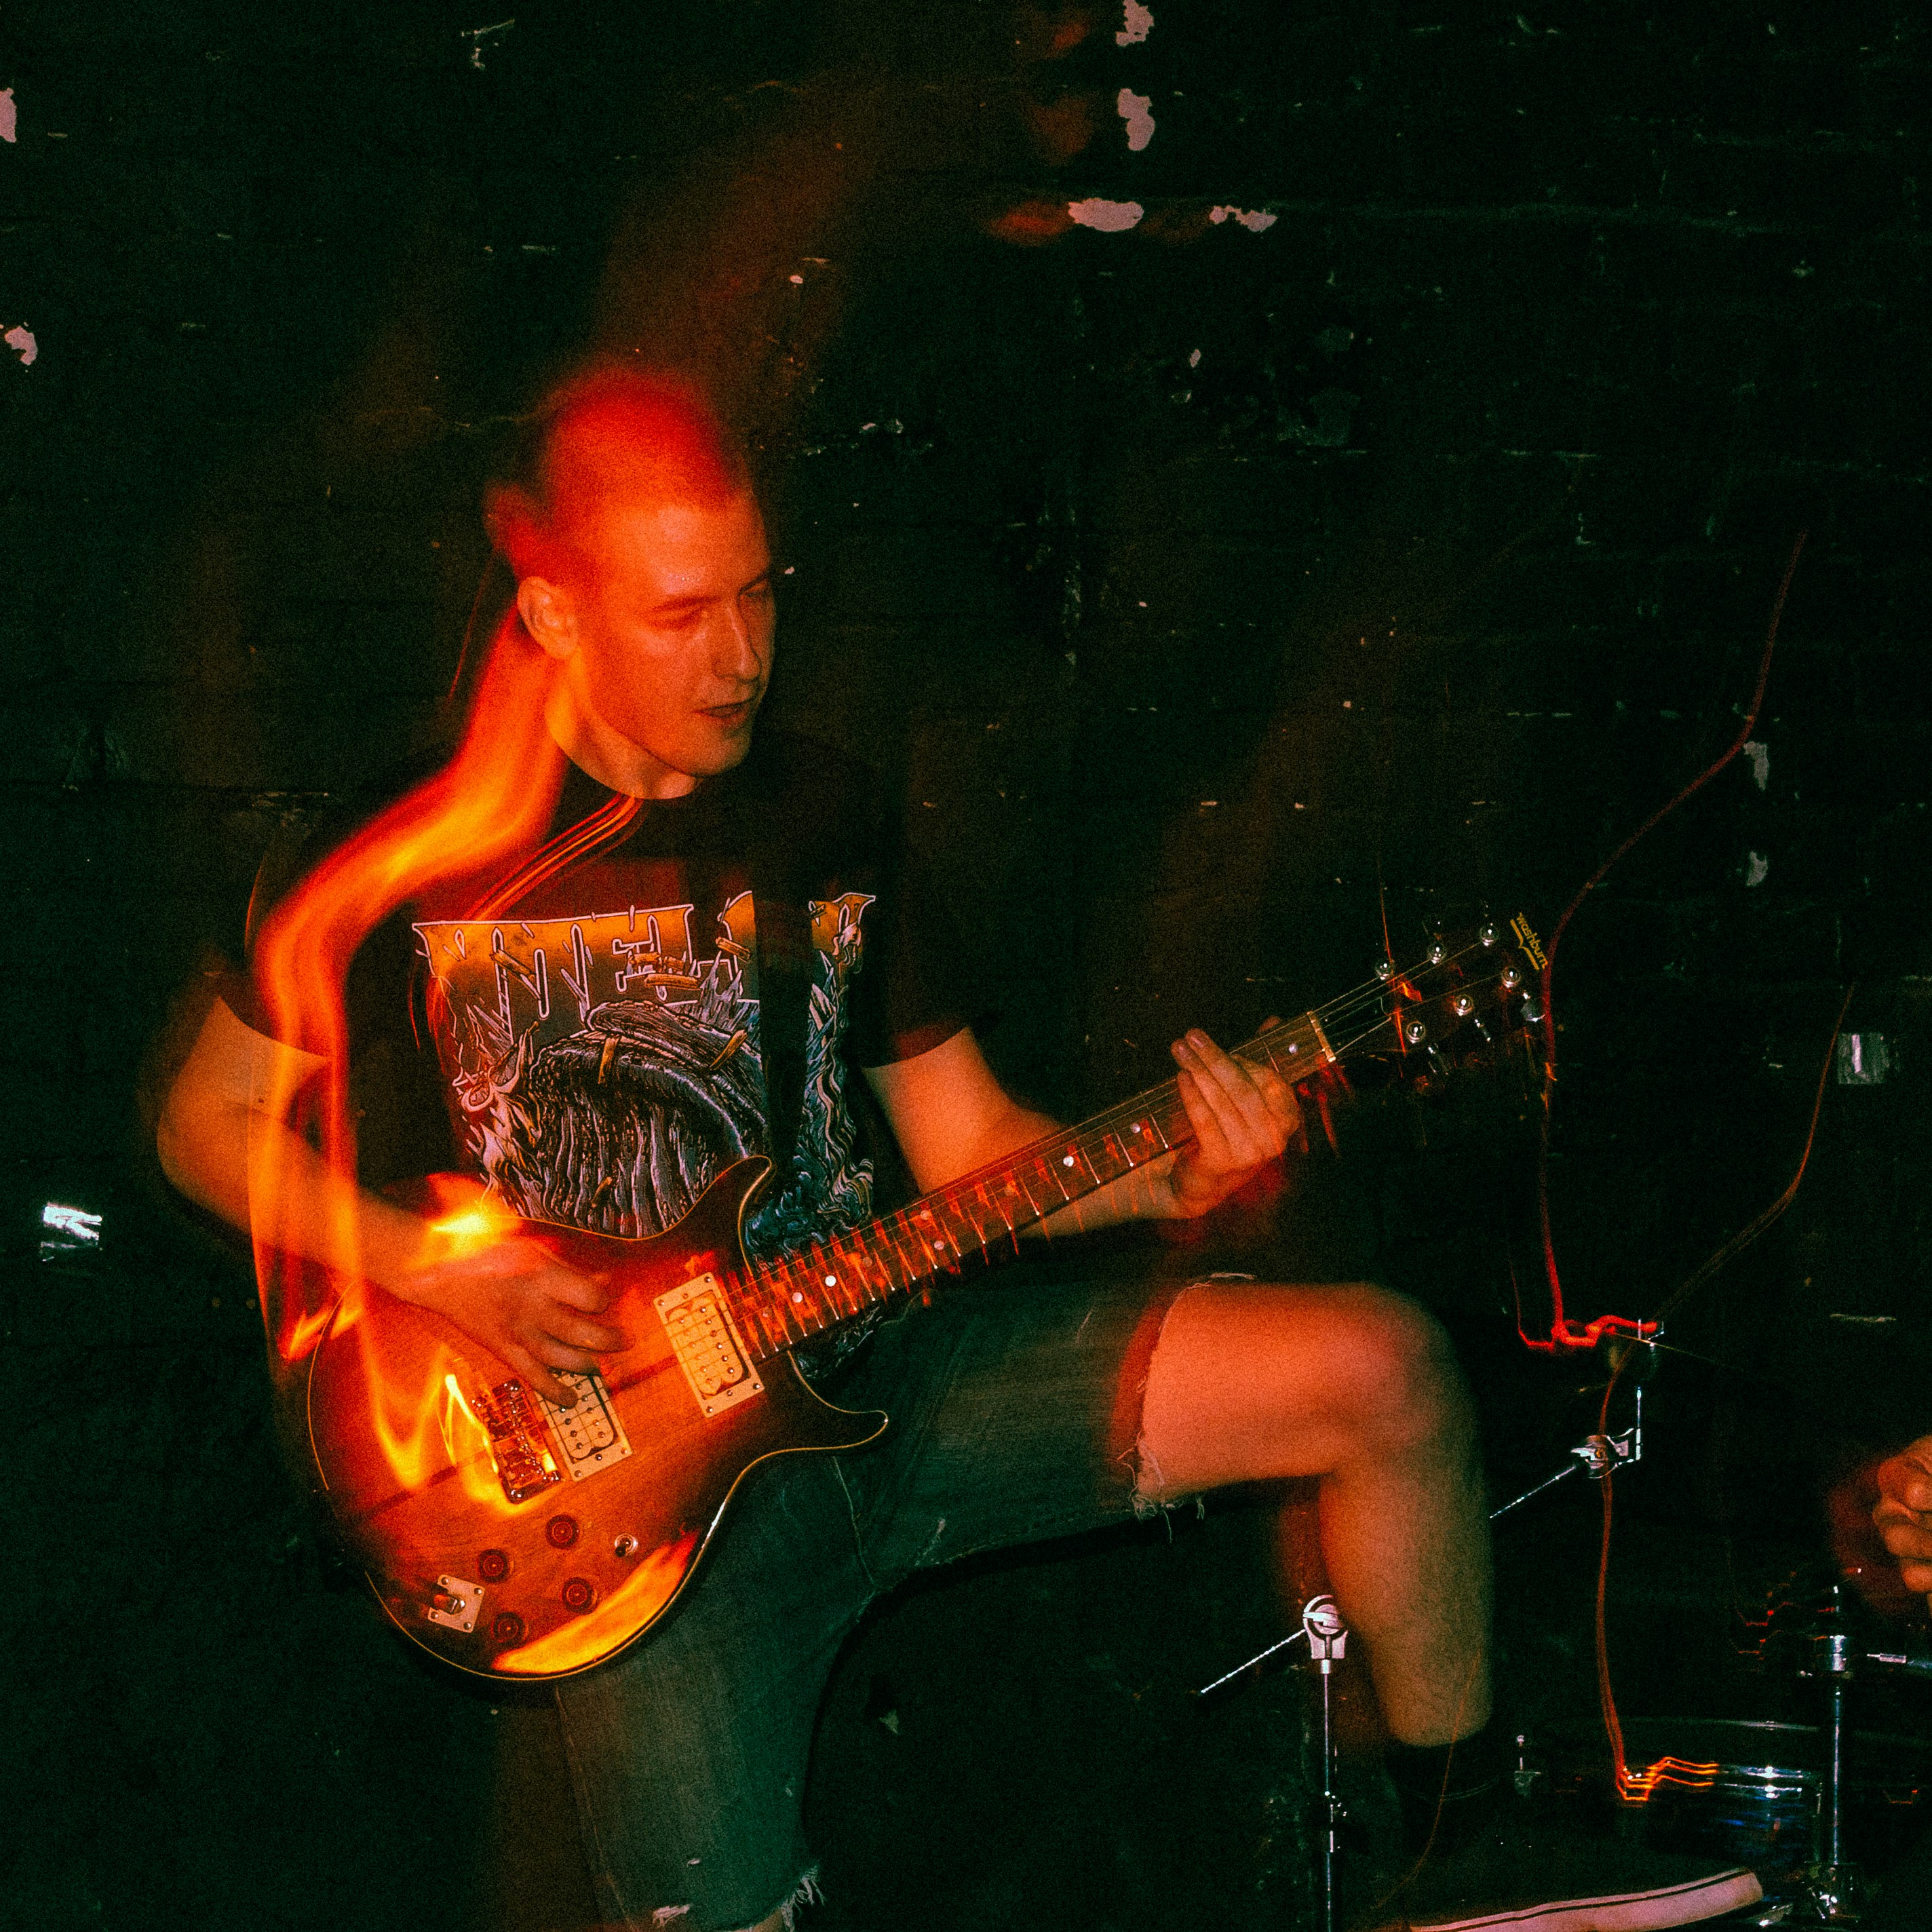 man in black shirt playing electric guitar